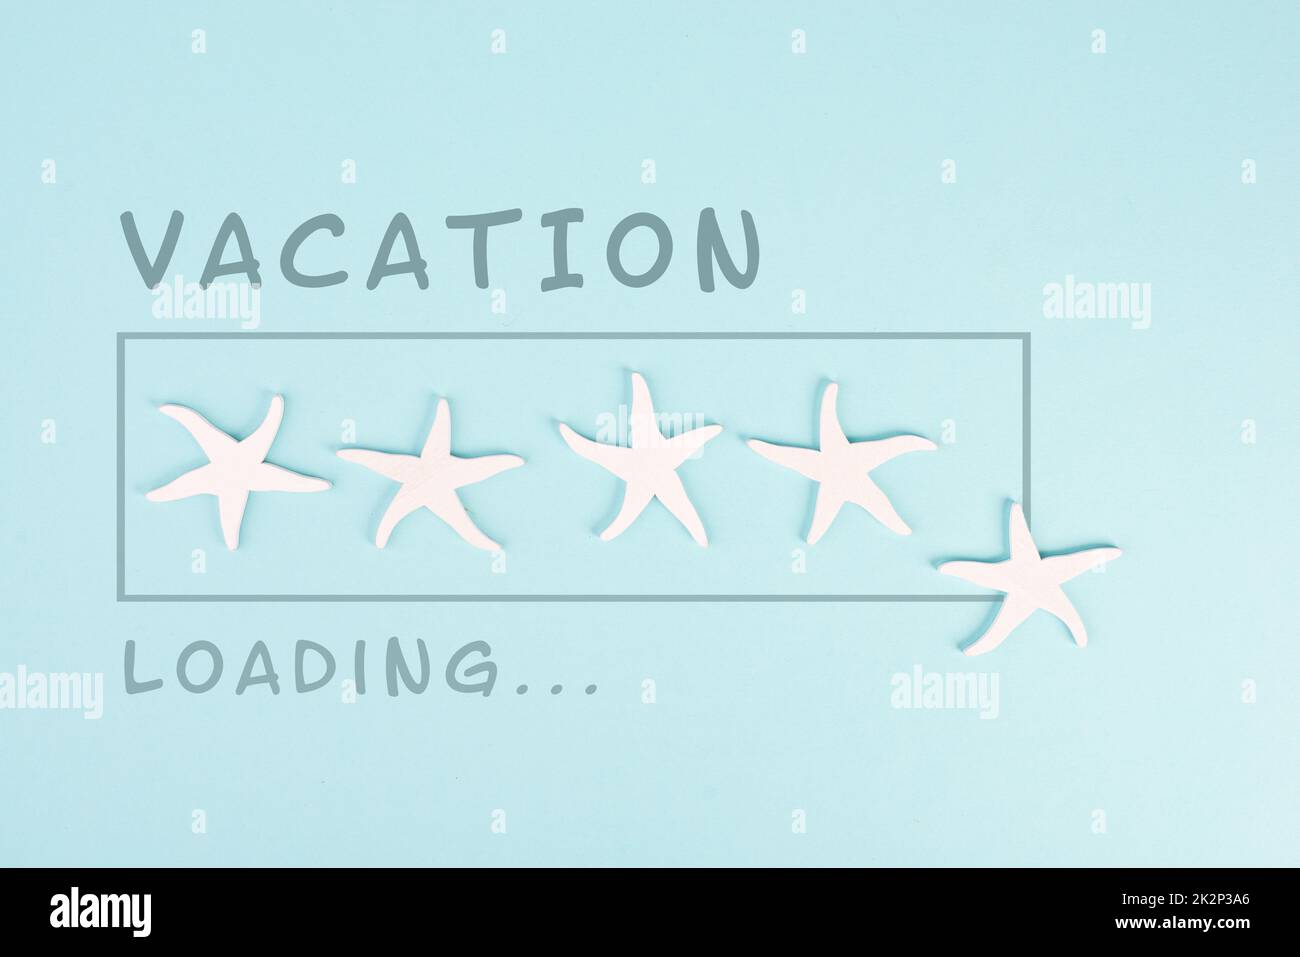 Barre de progression avec des étoiles de mer, chargement de vacances ist debout sur le papier, planification d'un voyage pour le week-end, vacances et concept de voyage Banque D'Images